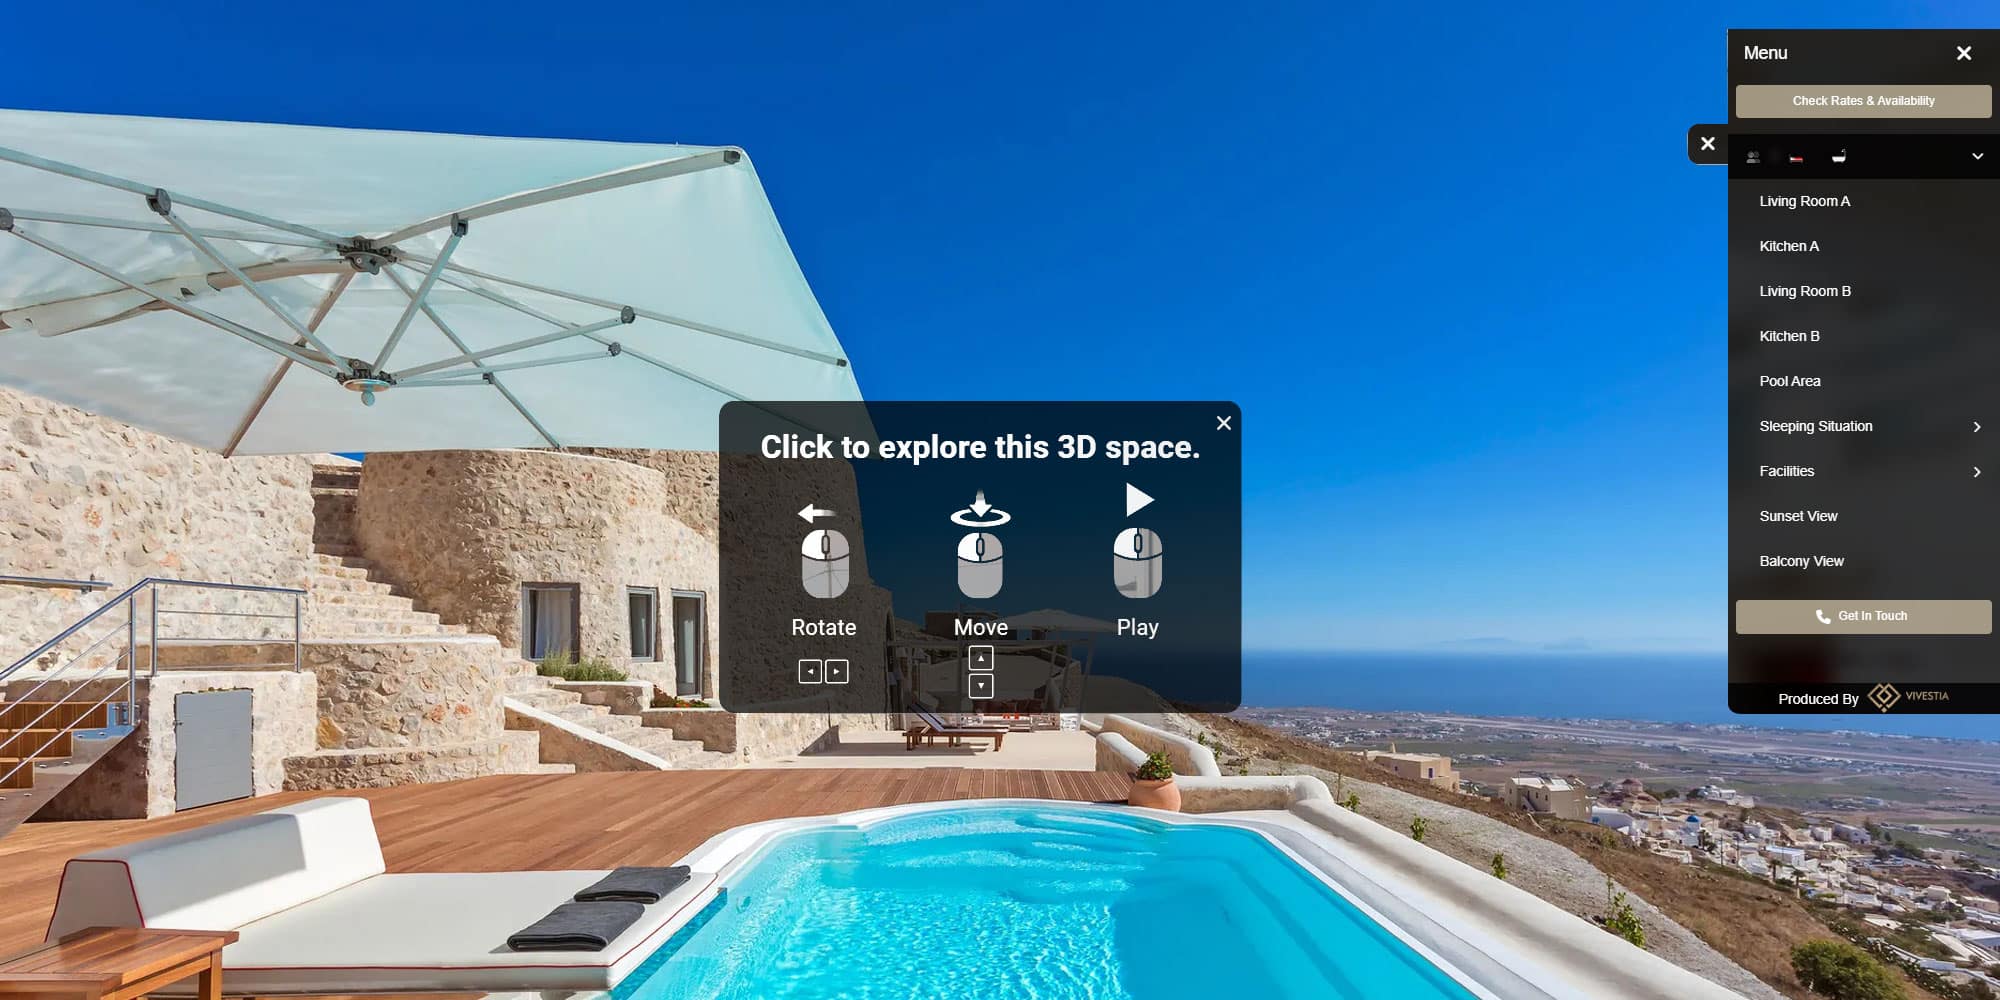 Προβολή βίλας με εικονική περιήγηση: Τι προσφέρει;-Vivestia | Risk-Free Villas, Hotels and Cruises in VR